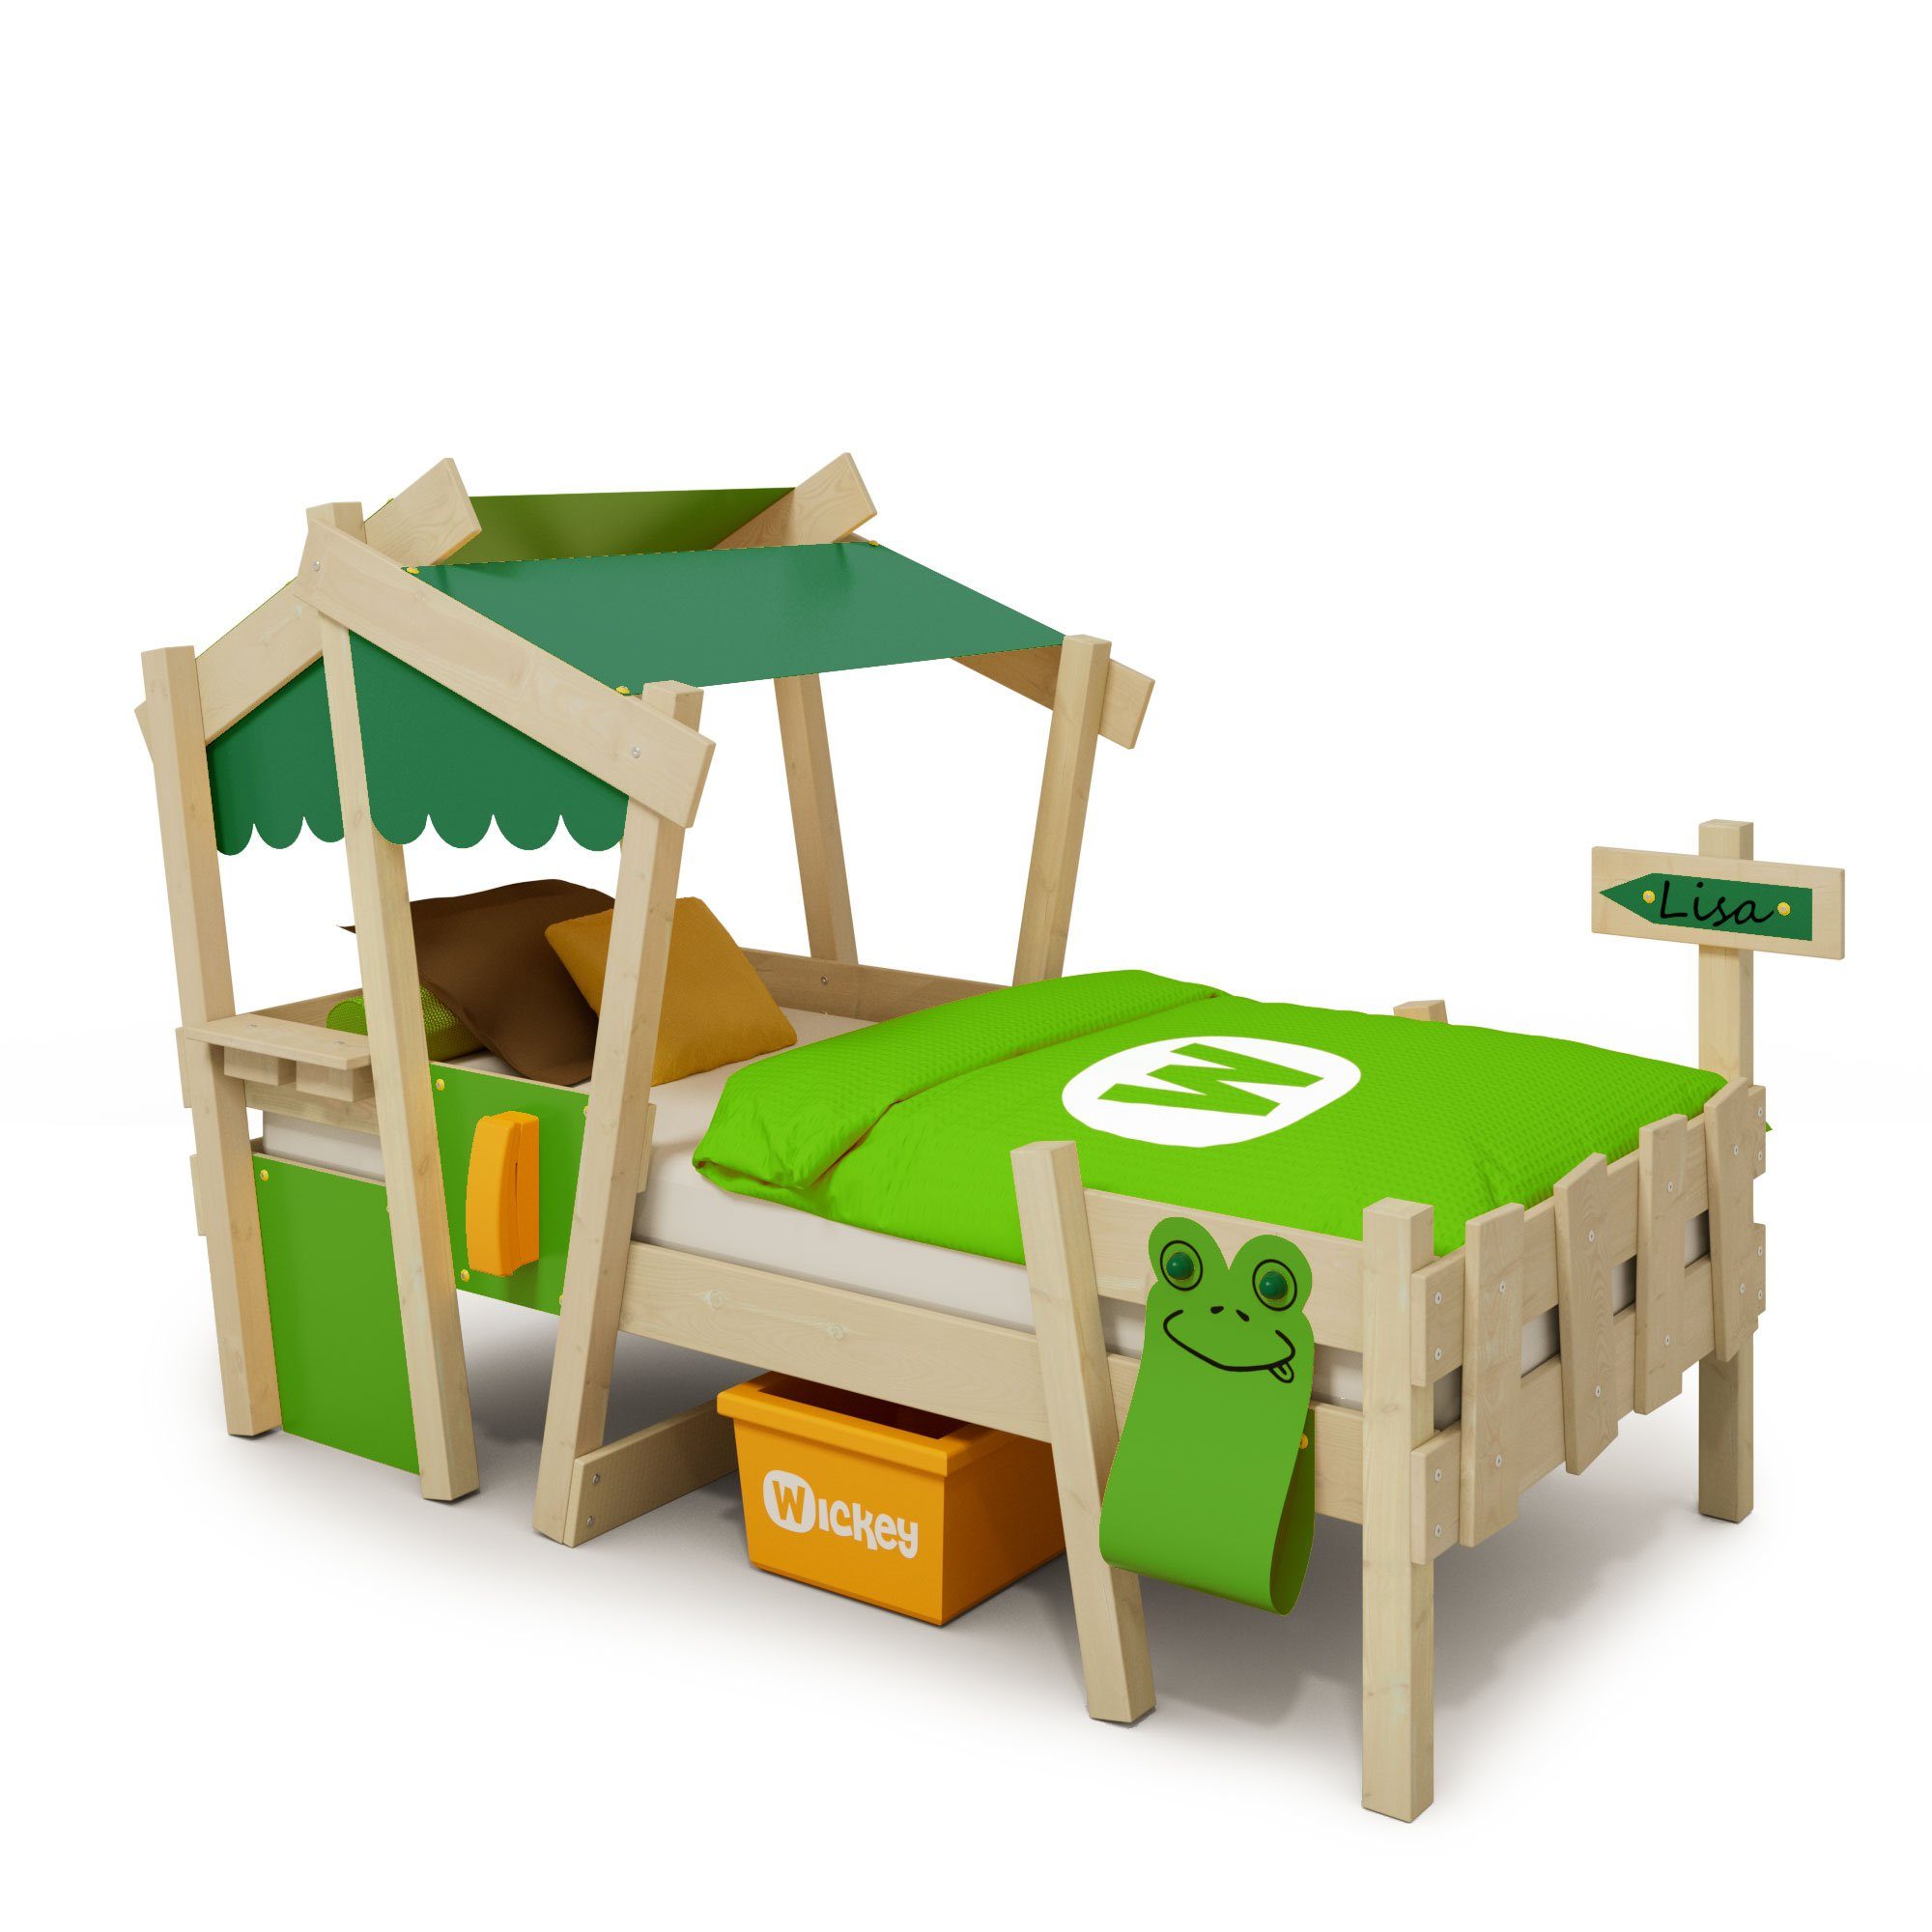 Wickey Kinderbett Crazy Candy - Holzbett, Spielbett 90 x 200 cm (Holzpaket aus Pfosten und Brettern, Spielbett für Kinder), Massivholzbett Grün/Apfelgrün